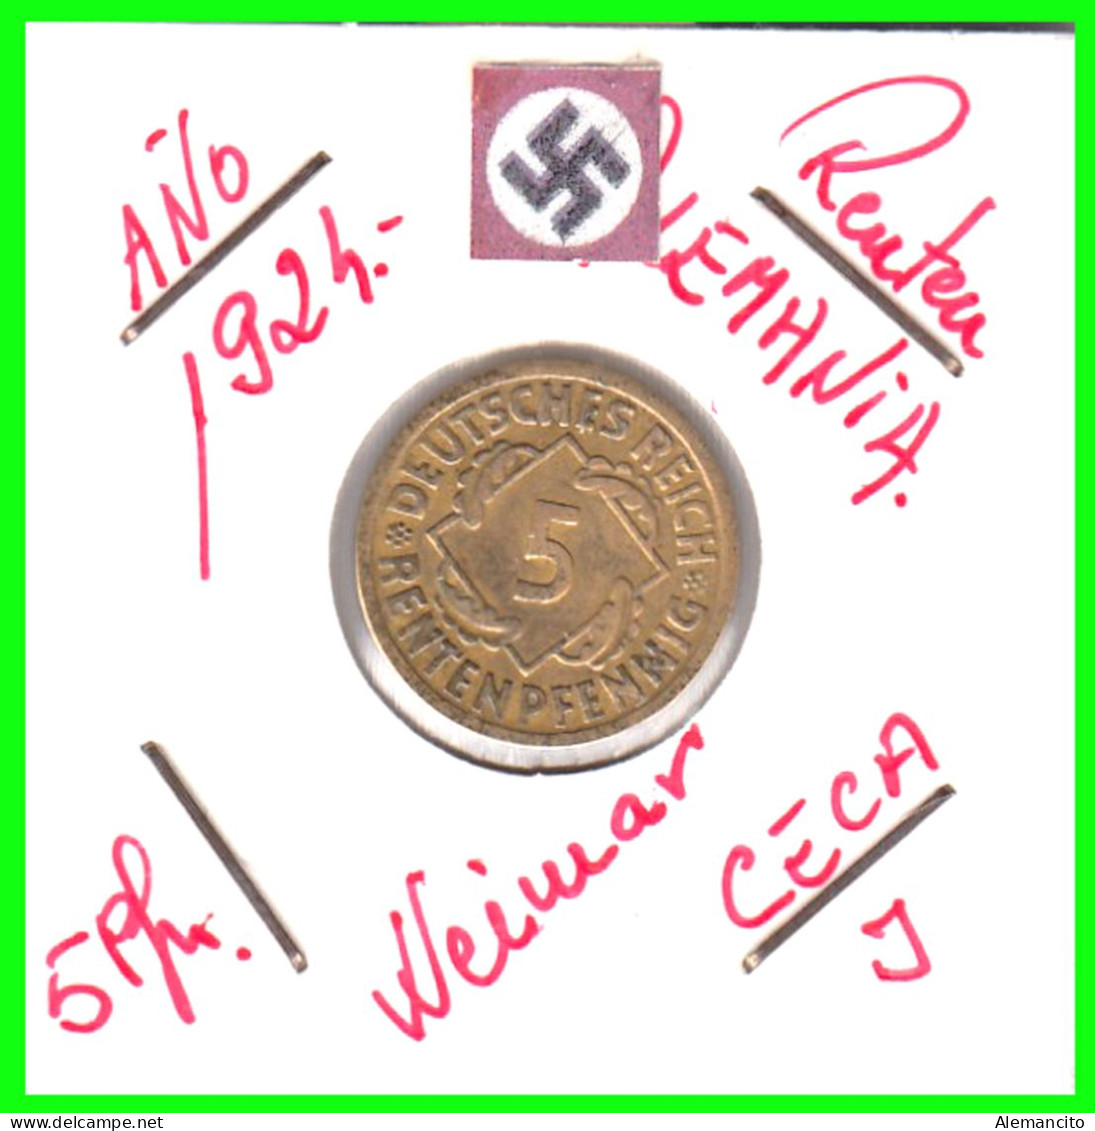 GERMANY REPÚBLICA DE WEIMAR 5 PFENNIG DE PENSIÓN (1924 CECA-G) MONEDA DEL AÑO 1923-1925 (RENTENPFENNIG KM # 32 - 5 Rentenpfennig & 5 Reichspfennig